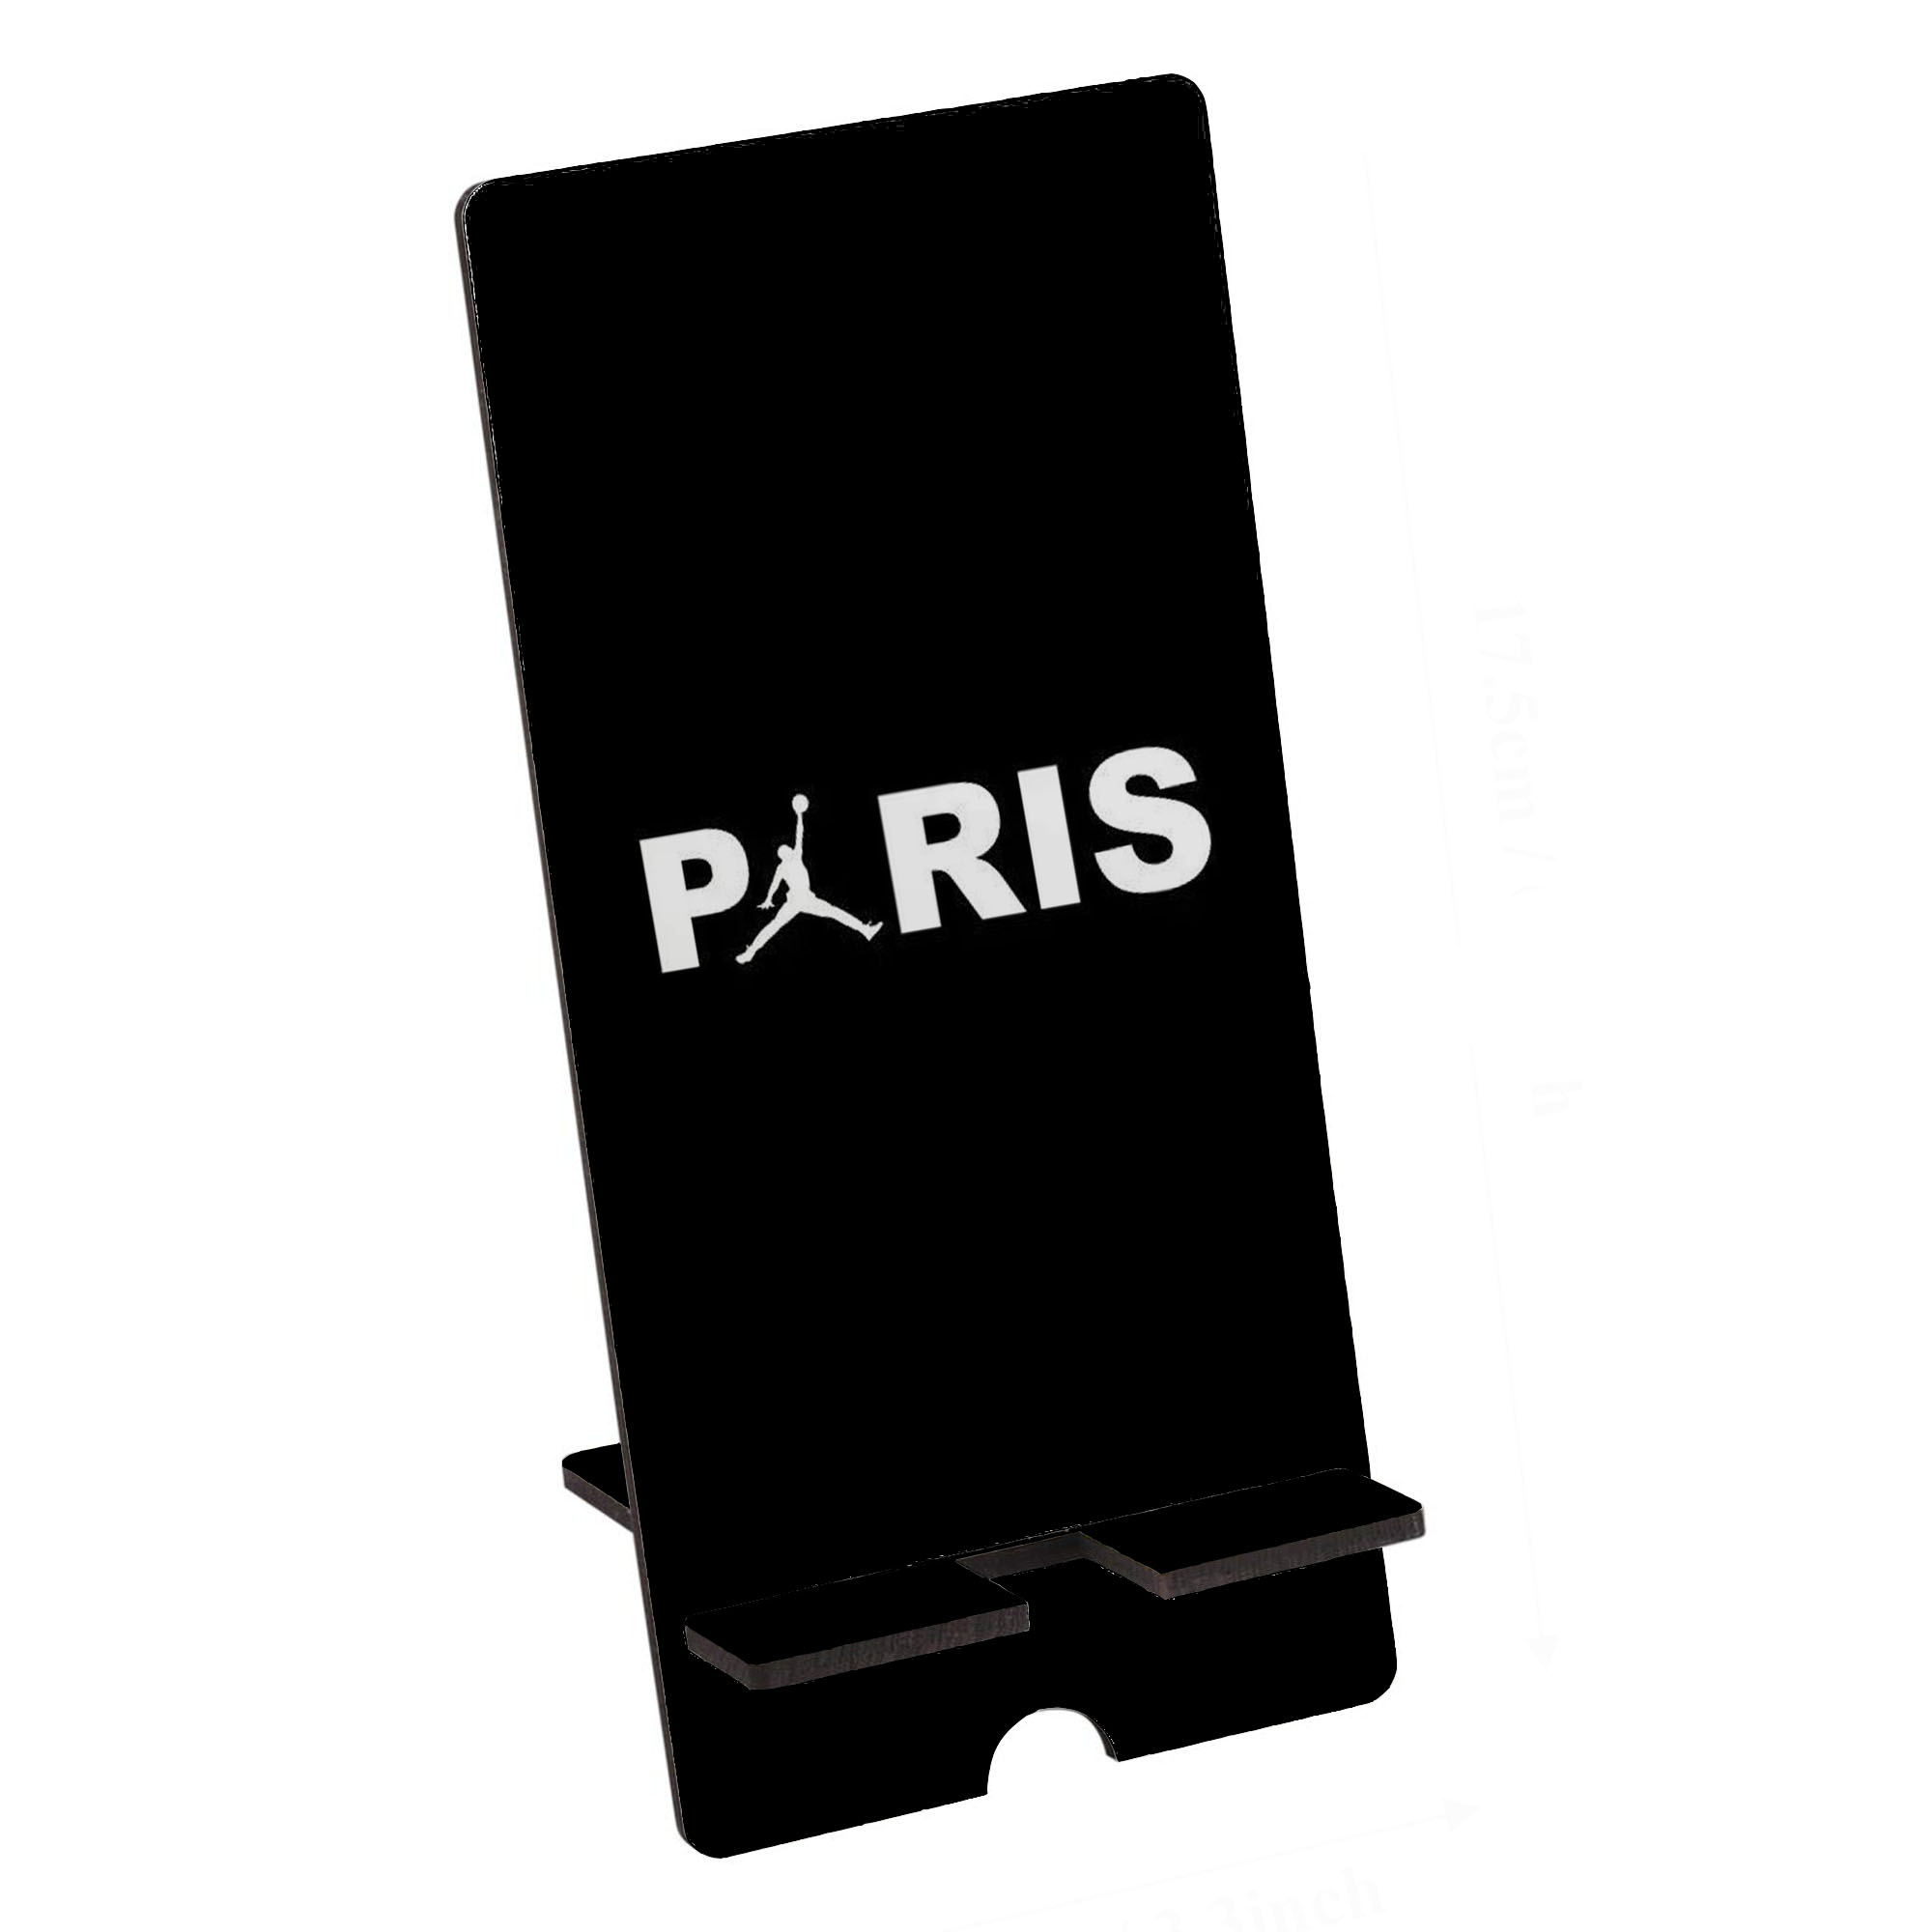 پایه نگهدارنده گوشی موبایل آی تمر مدل پاریس کد 13